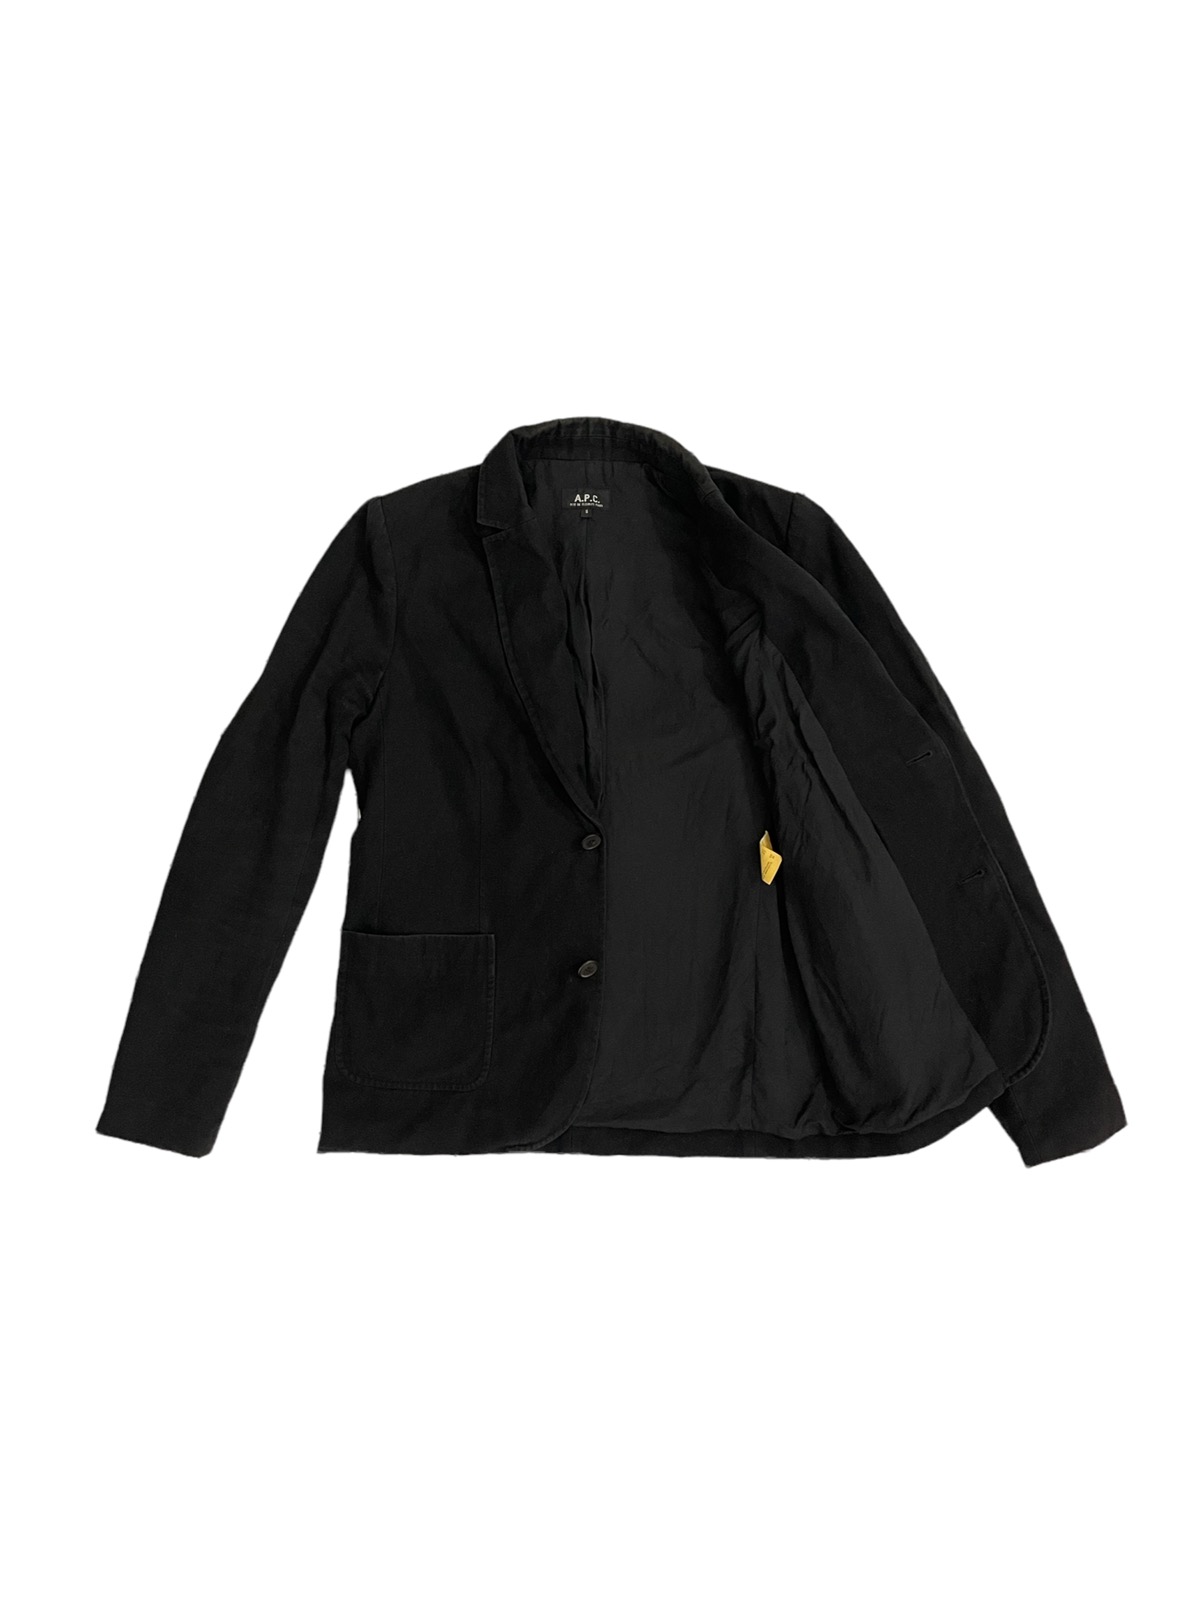 apc jacket - 3